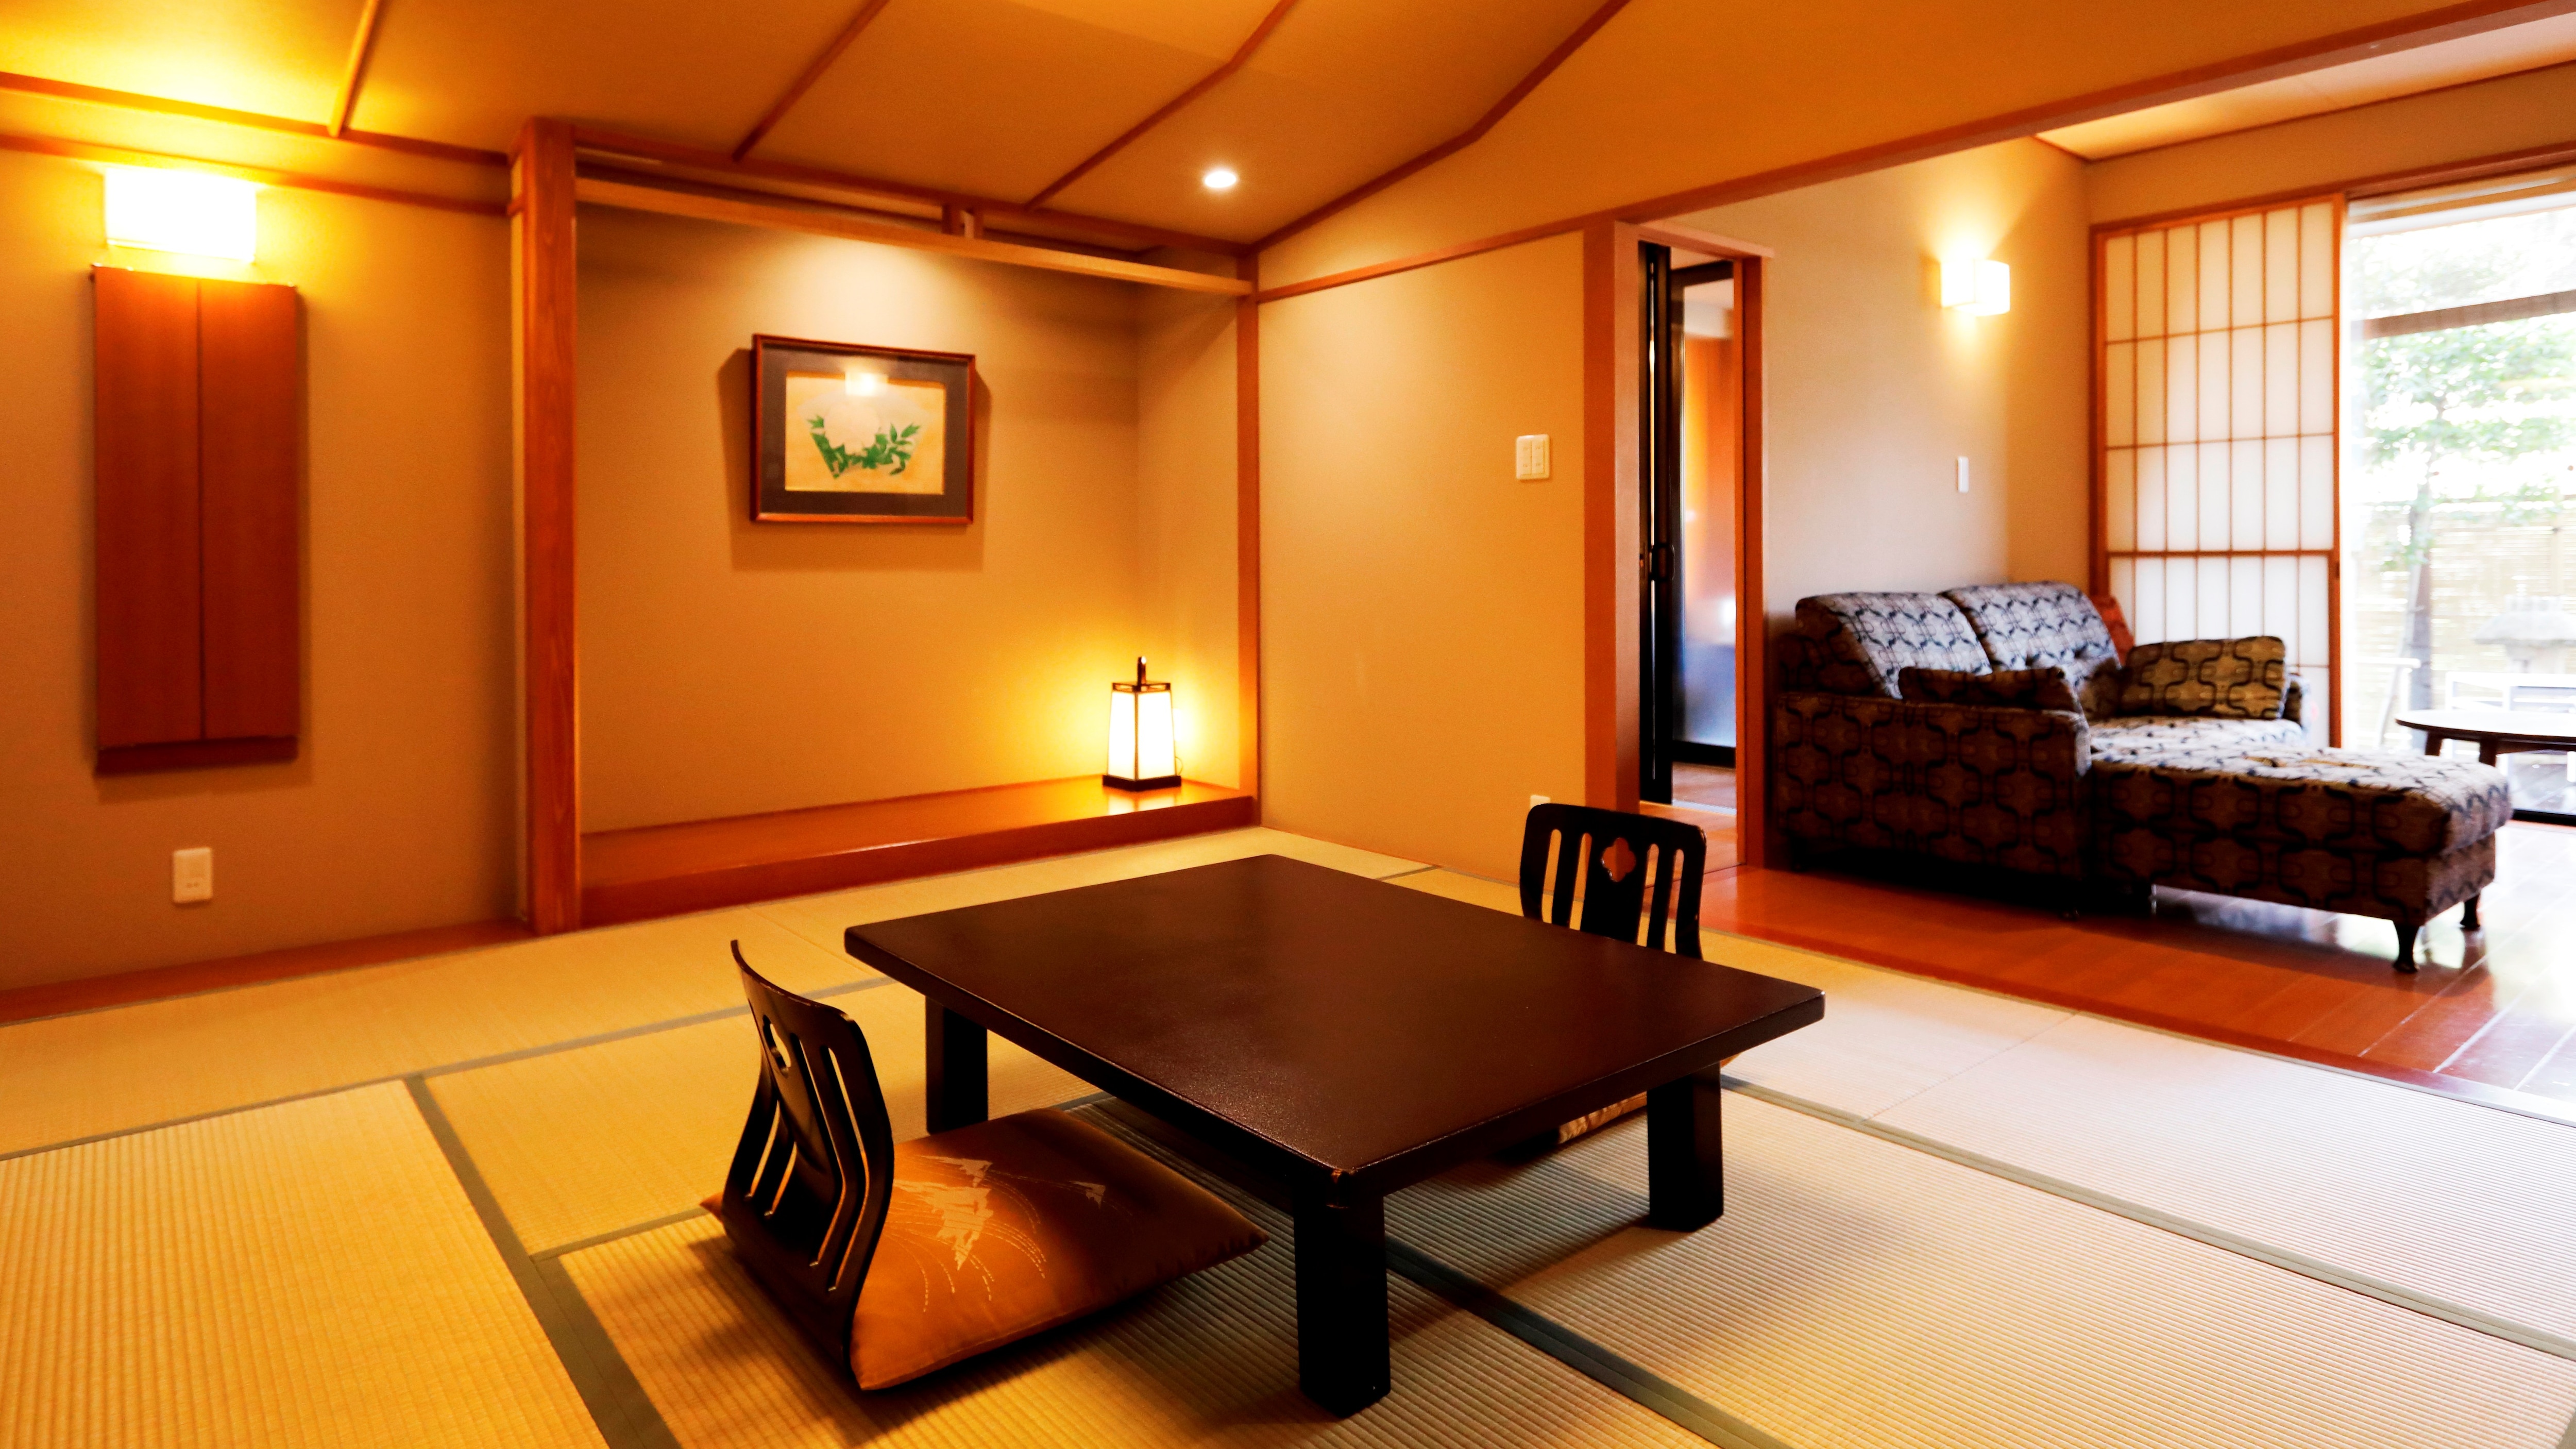 ห้องพักประเภท E พร้อมห้องอาบน้ำกลางแจ้งปลอดบุหรี่ [ห้องสไตล์ญี่ปุ่น 10 เสื่อทาทามิ] << ตัวอย่างห้องพัก >>